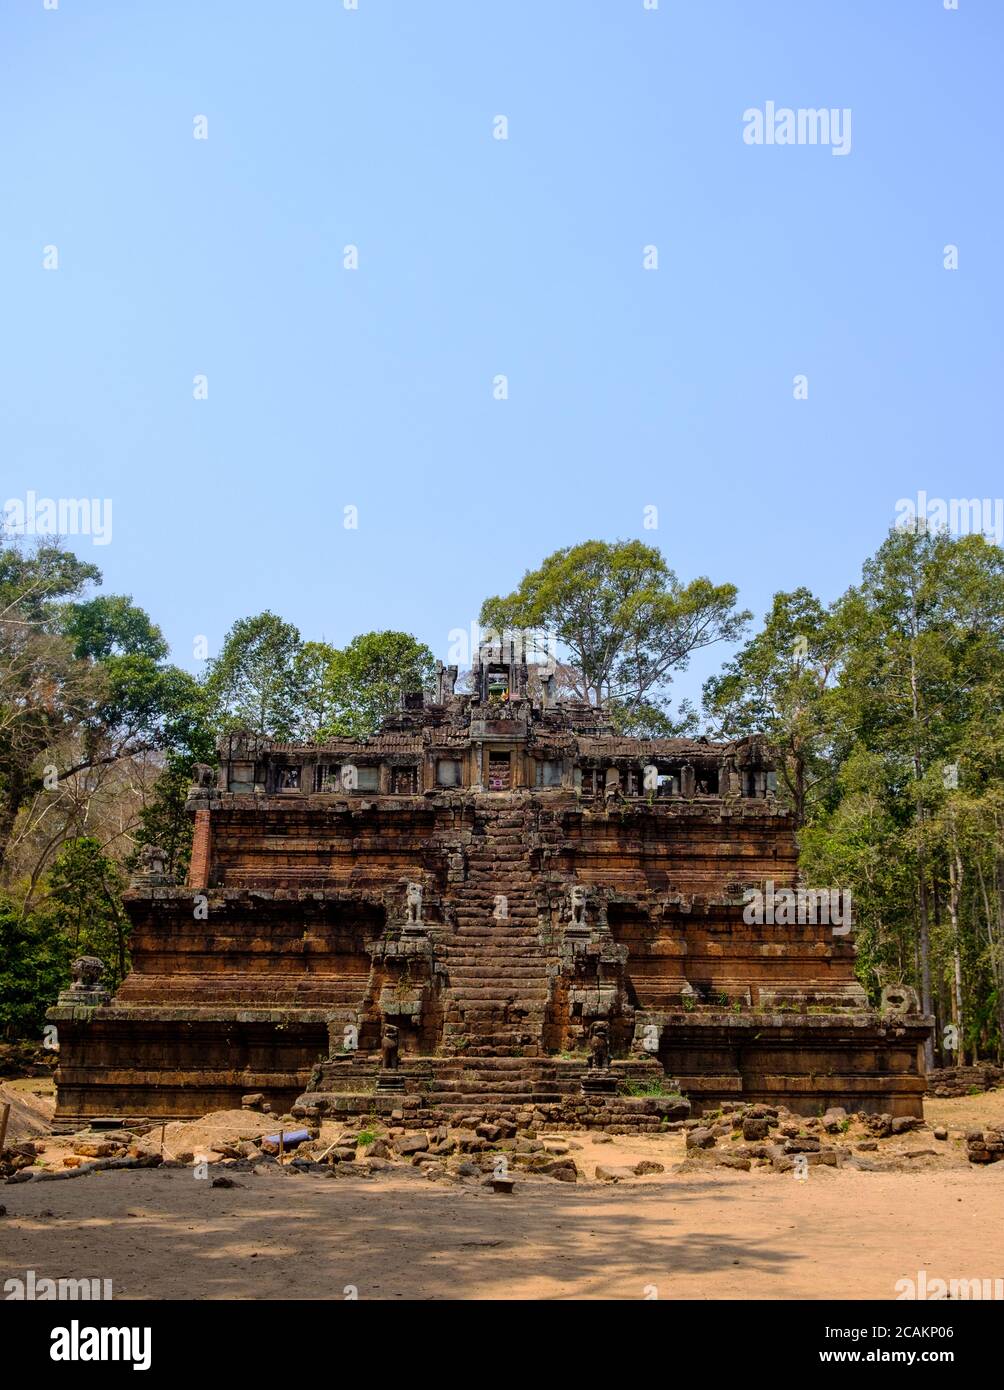 Phimeanakas Temple, Angkor Thom, Siem Reap, Cambodia Stock Photo